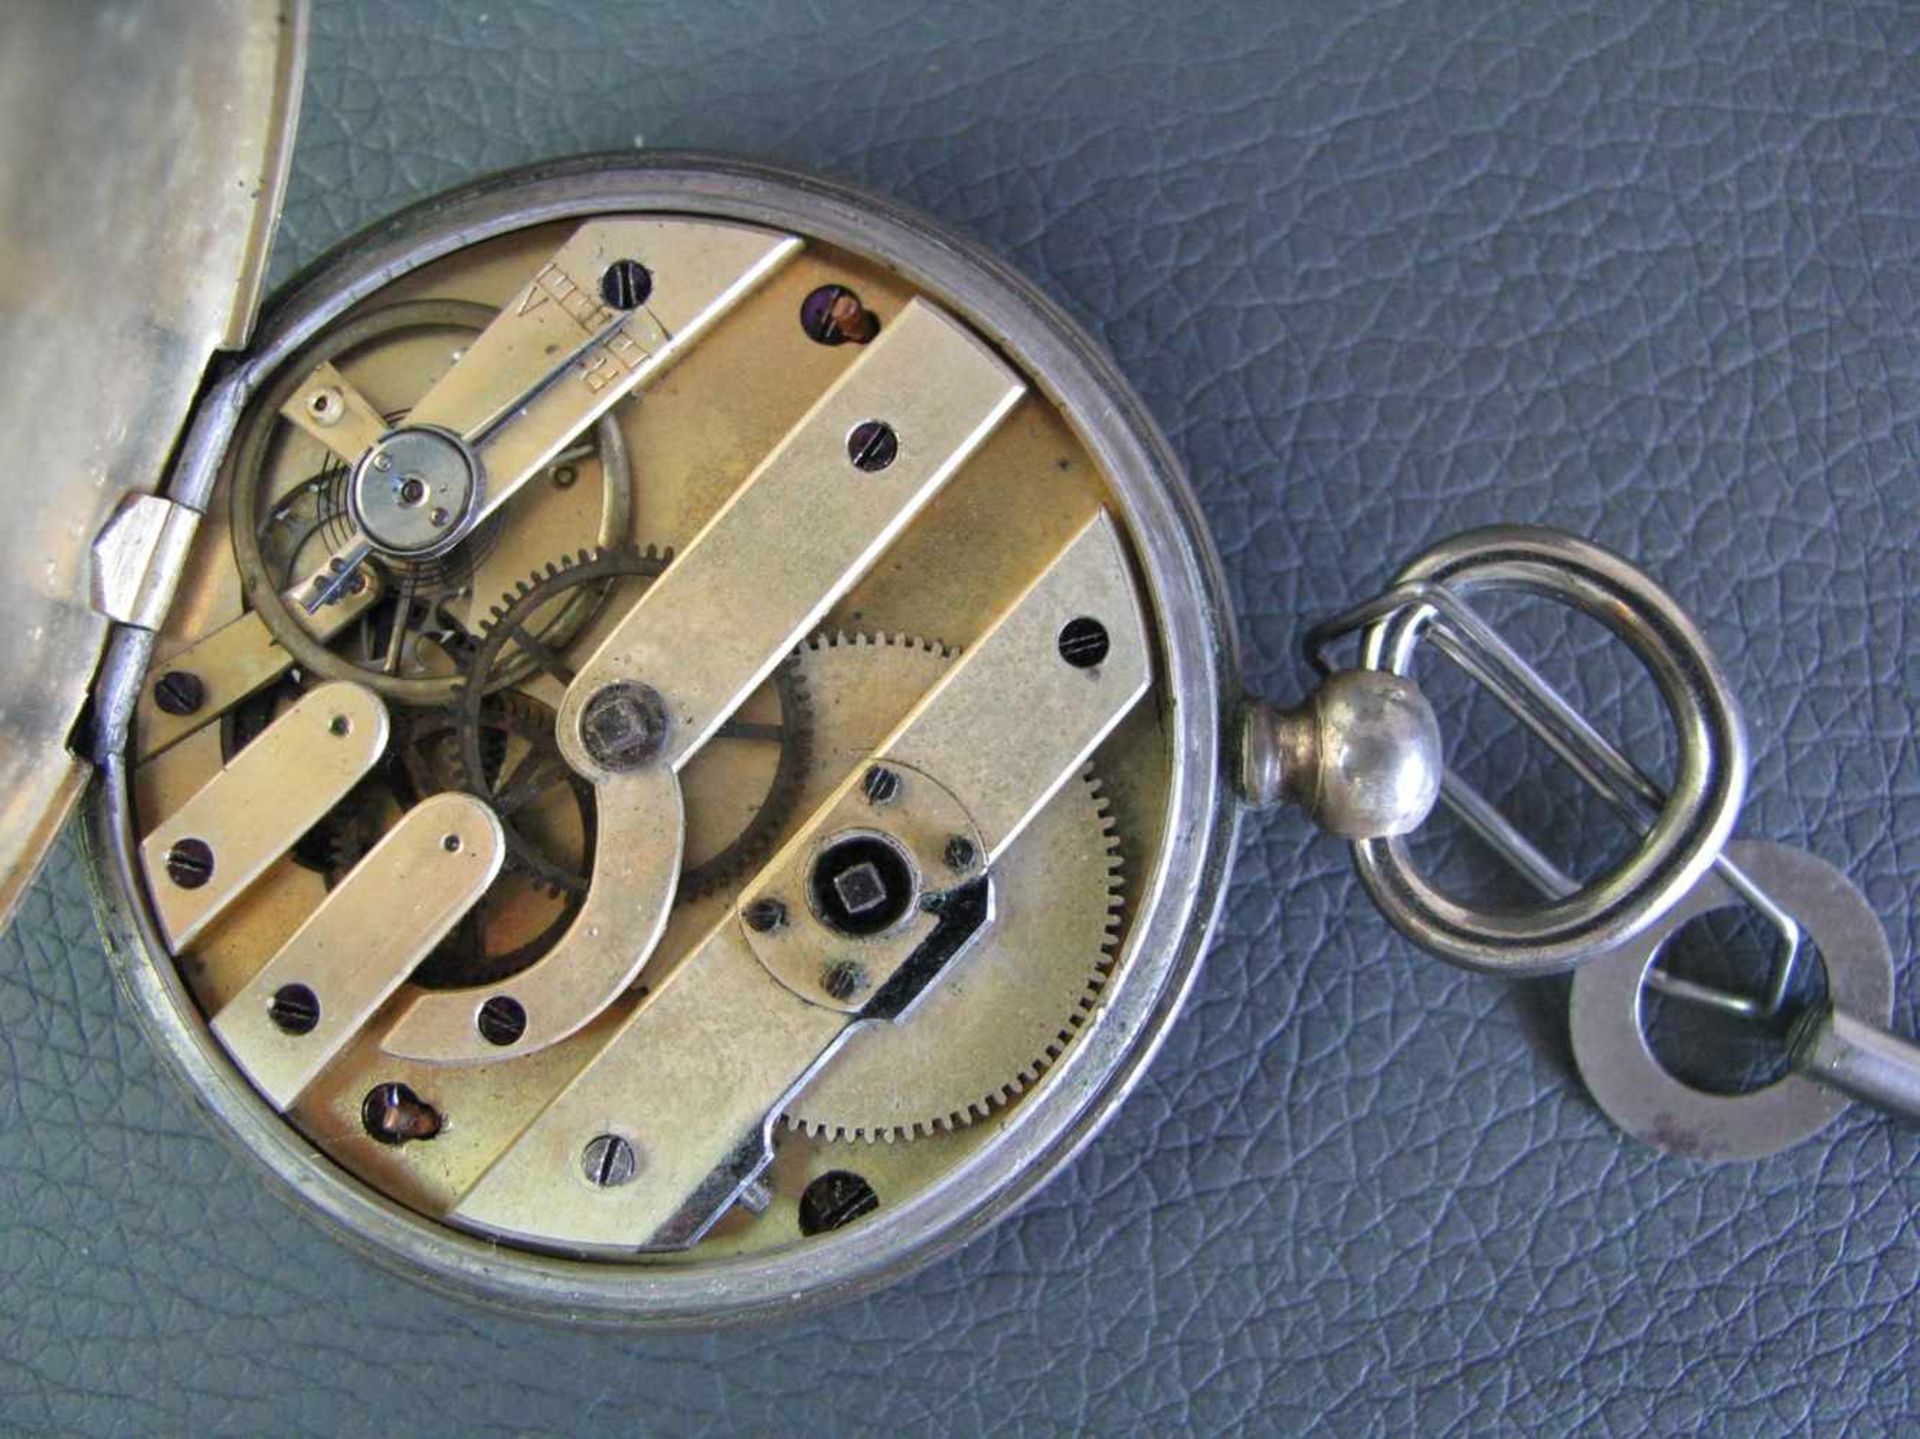 Taschenuhr, 19. Jahrhundert, Silbergehäuse, Schlüsselaufzug, mit Schlüssel, intakt, d 4,9 cm.- - - - Image 3 of 3